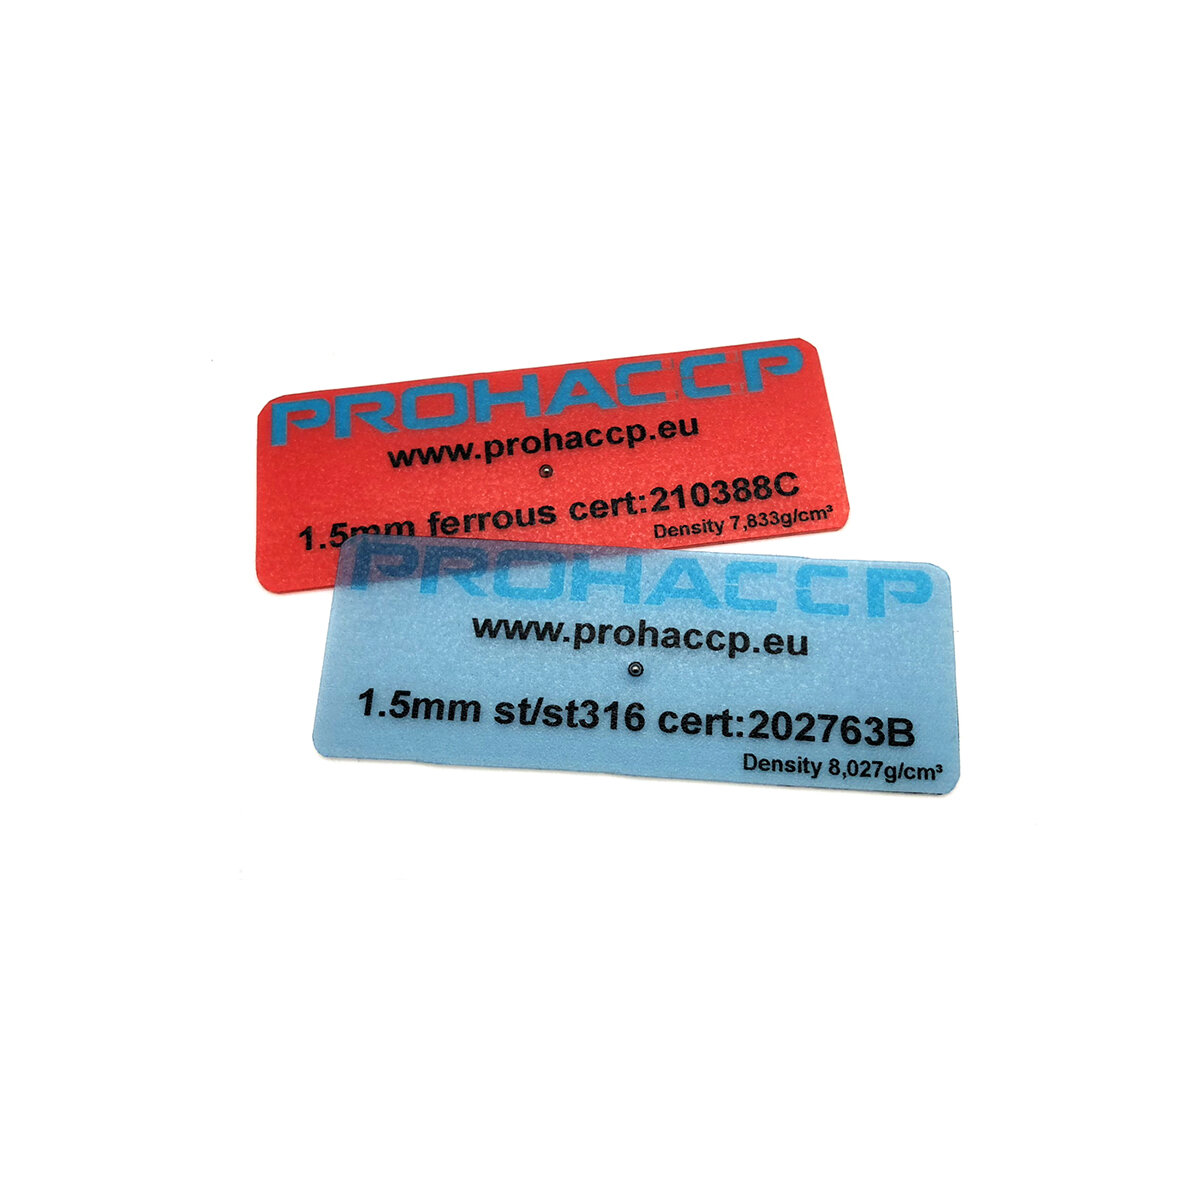 Cartão de PVC Detectável FoilMetal View produto